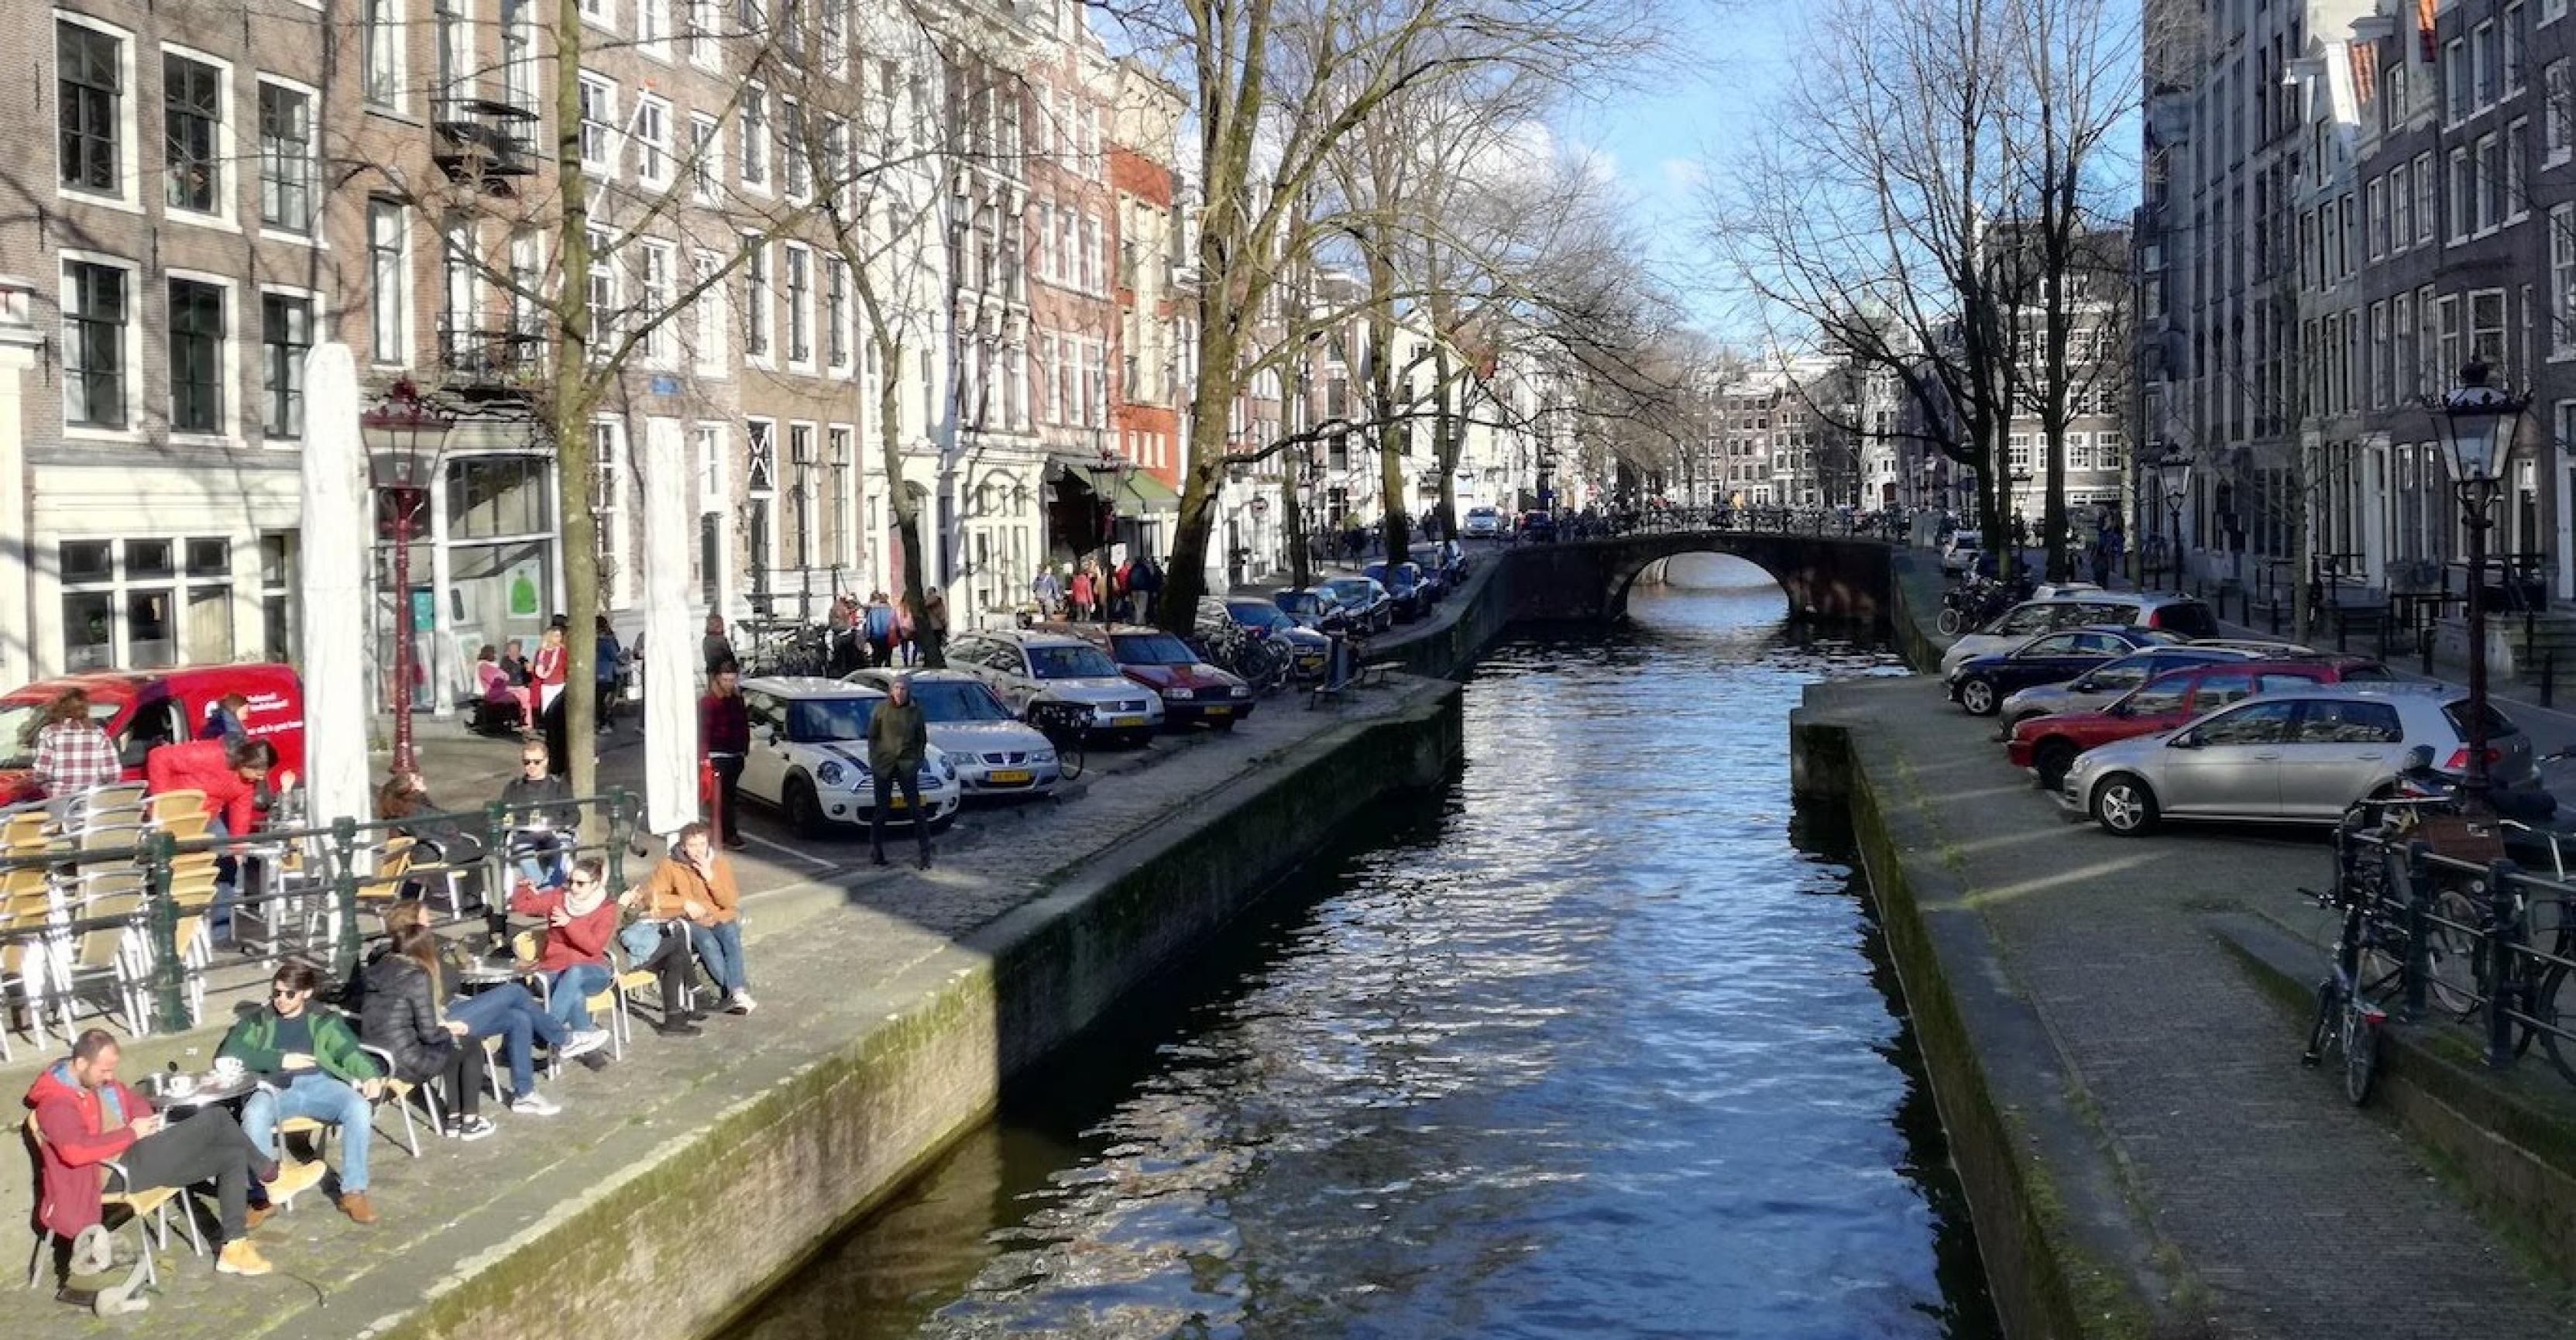 Blick von einer Brücke auf eine Gracht in Amsterdam, an der beidseitig Autos parken.